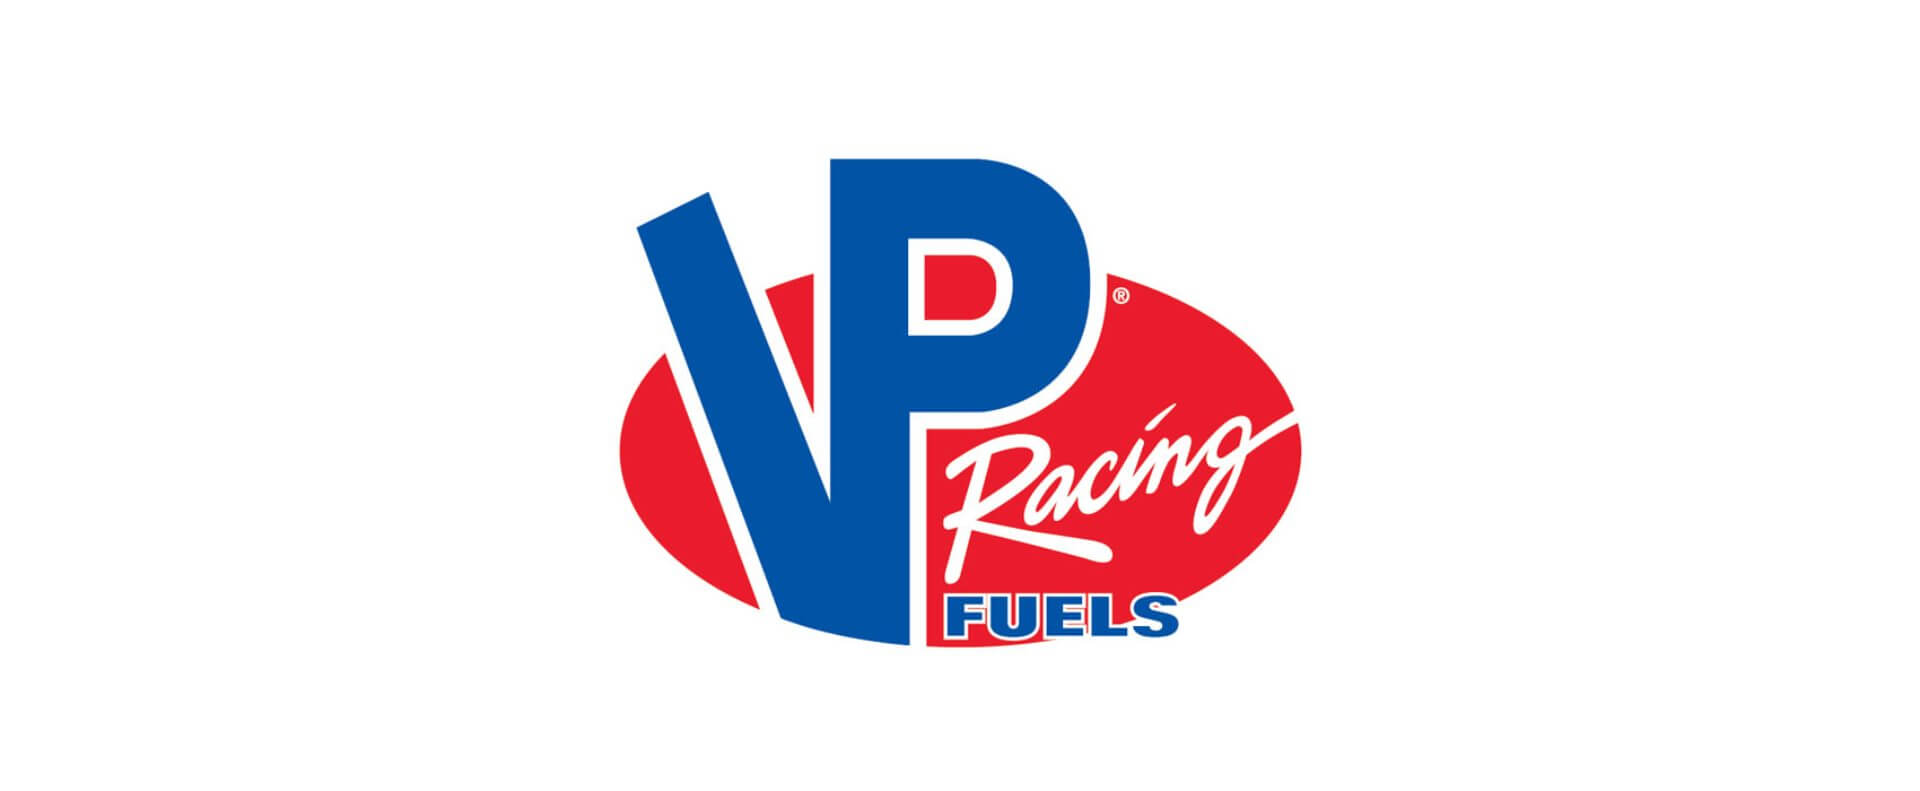 VP Racing